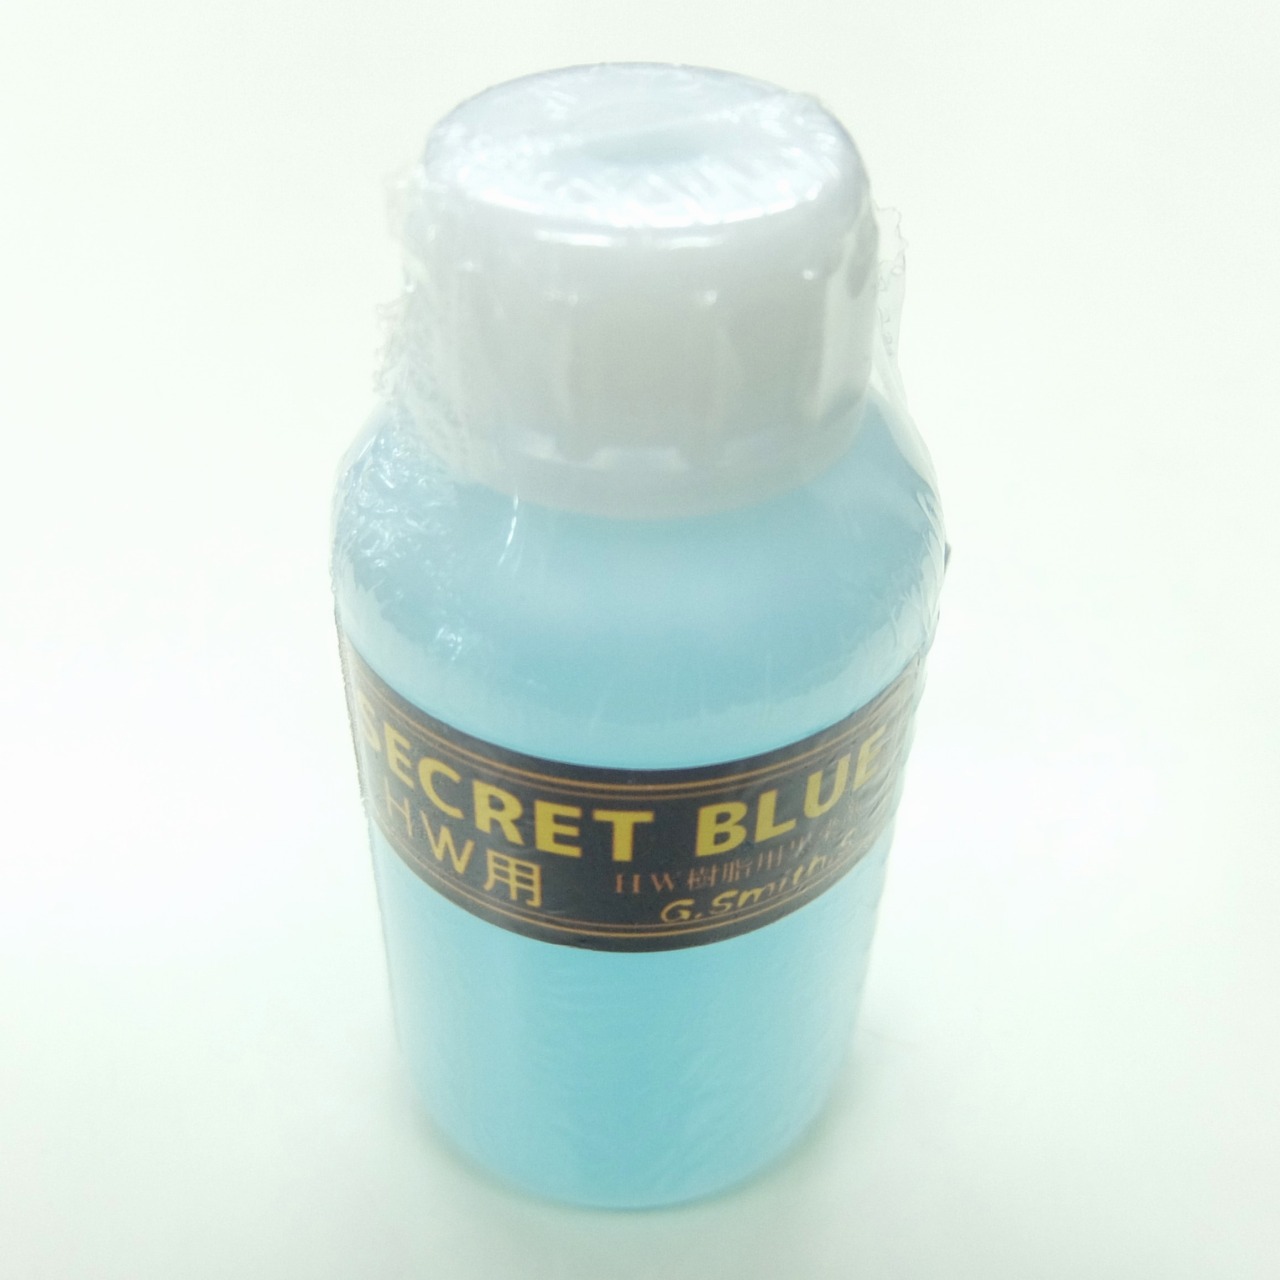 GスミスS SECRET BLUE(シークレットブルー) HW用